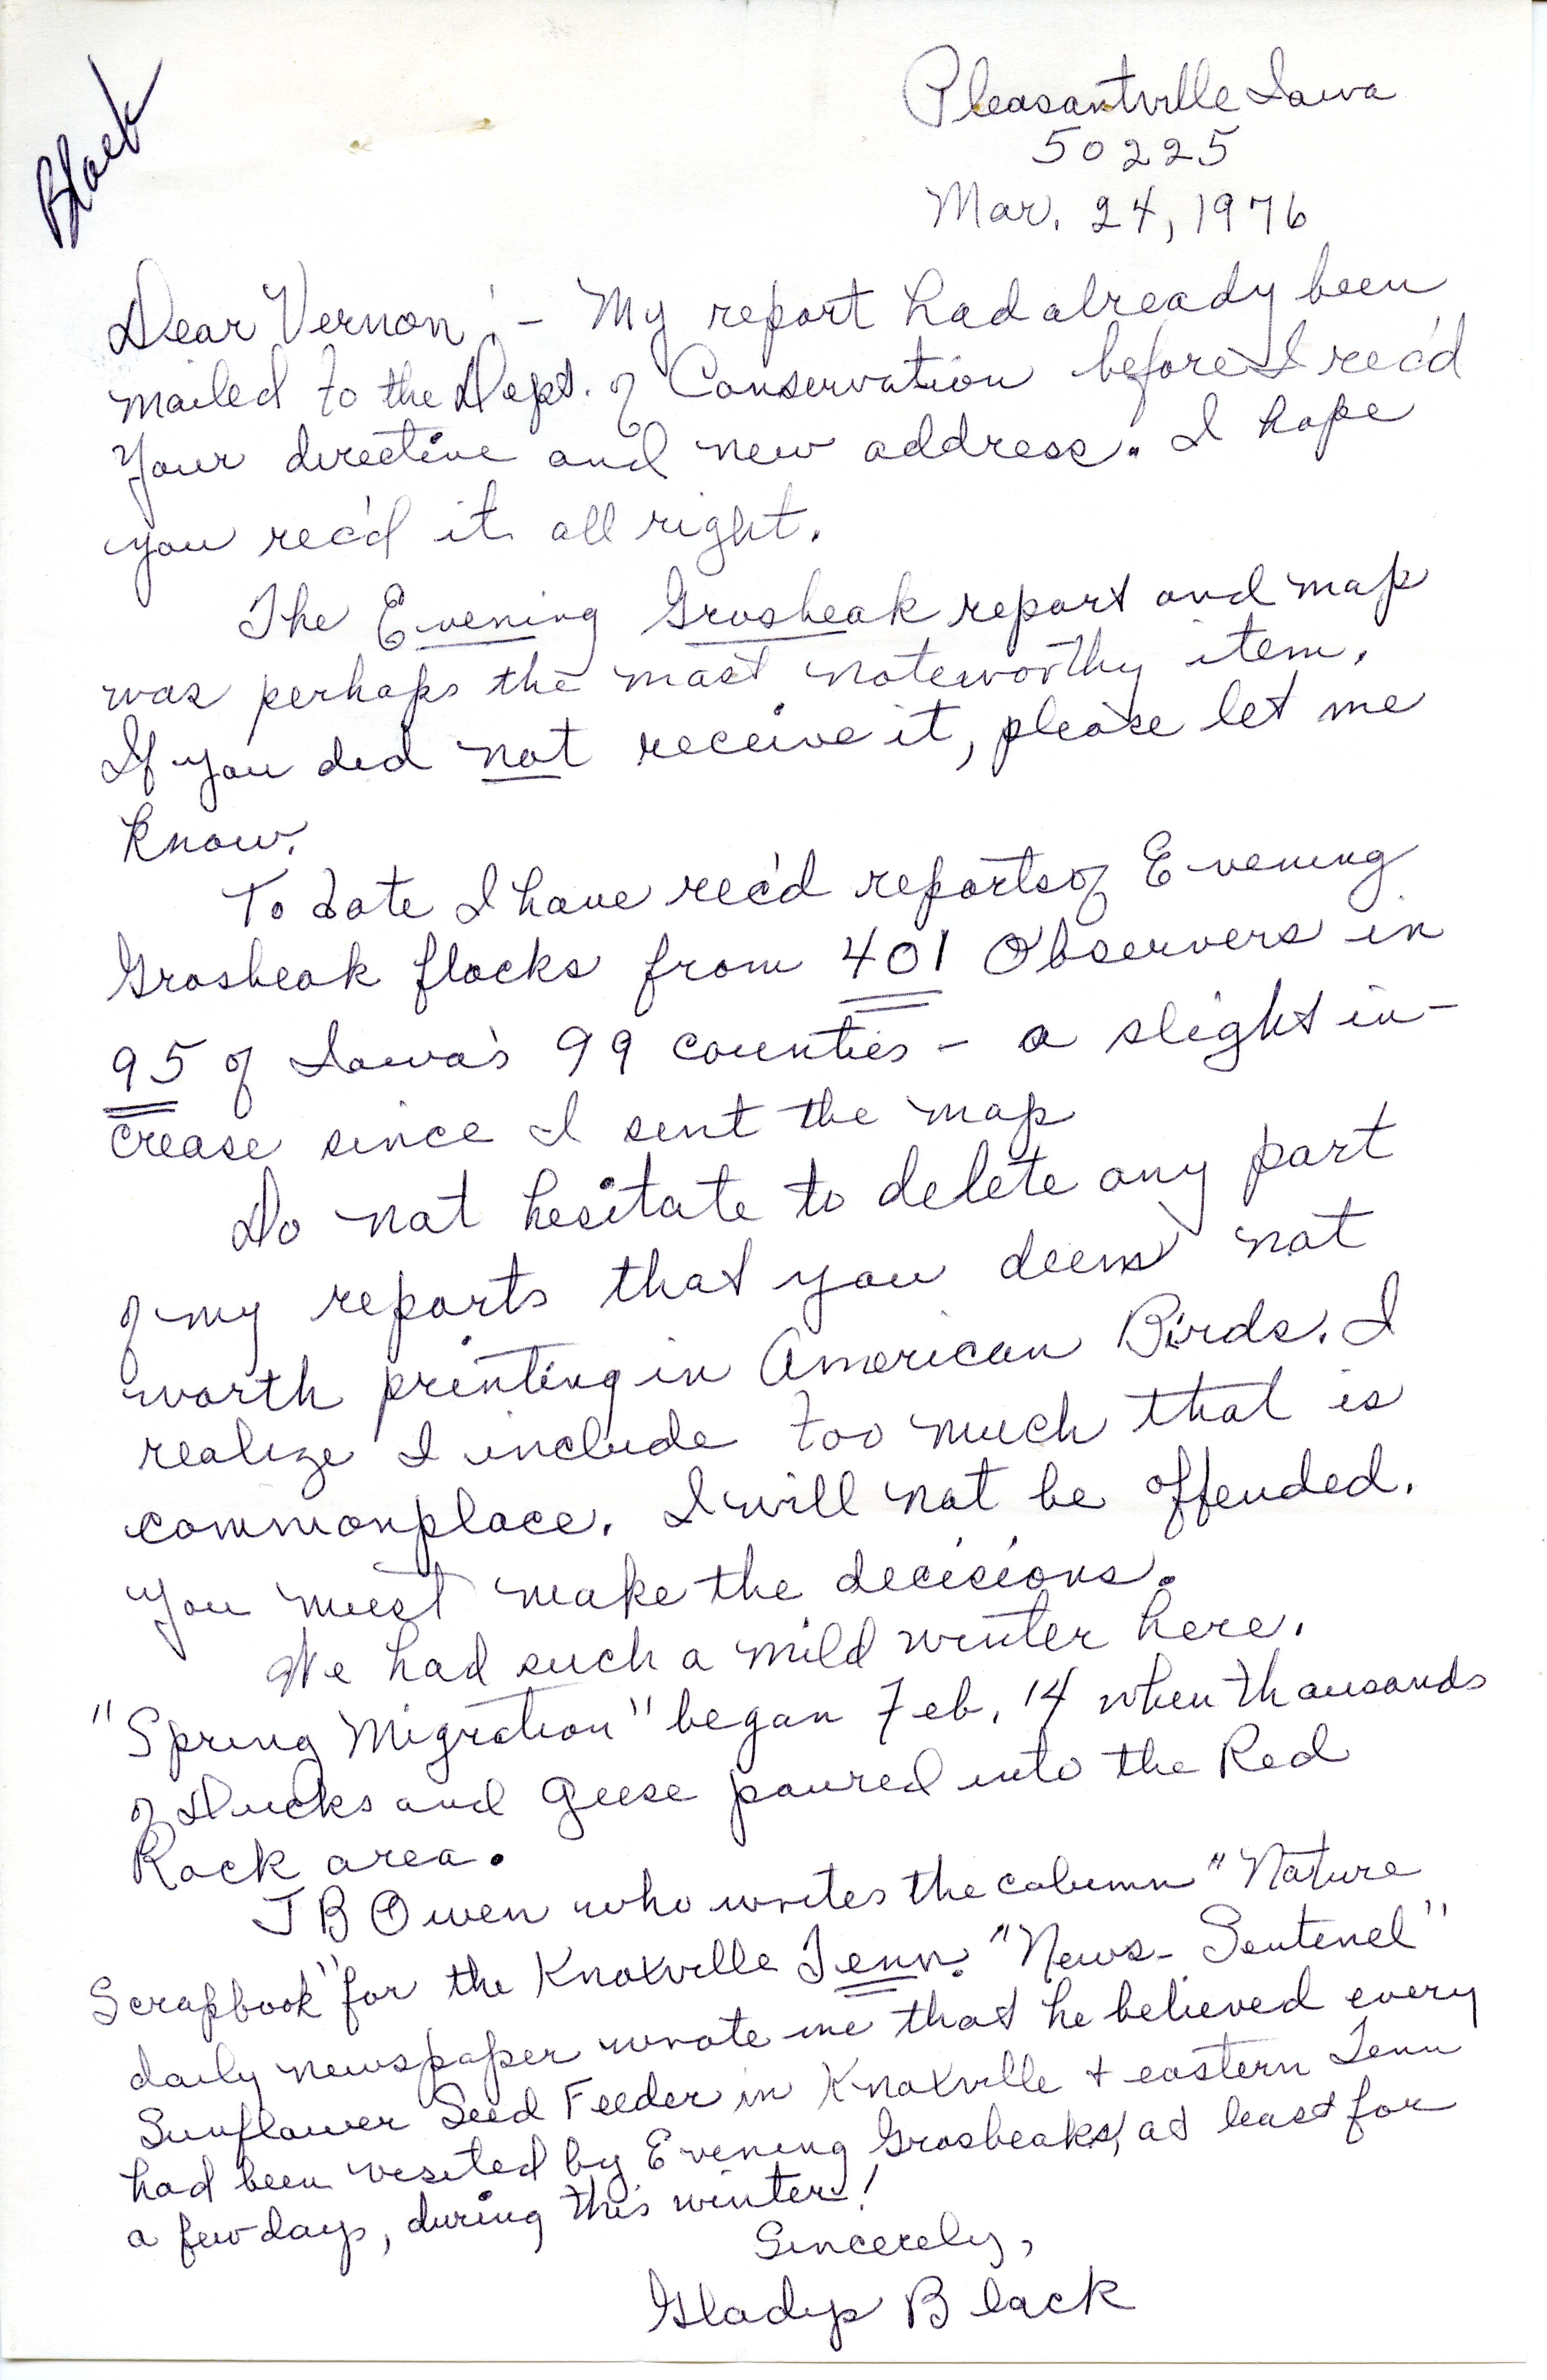 Gladys Black letter to Vernon Kleen regarding Evening Grosbeak invasion, March 24, 1976